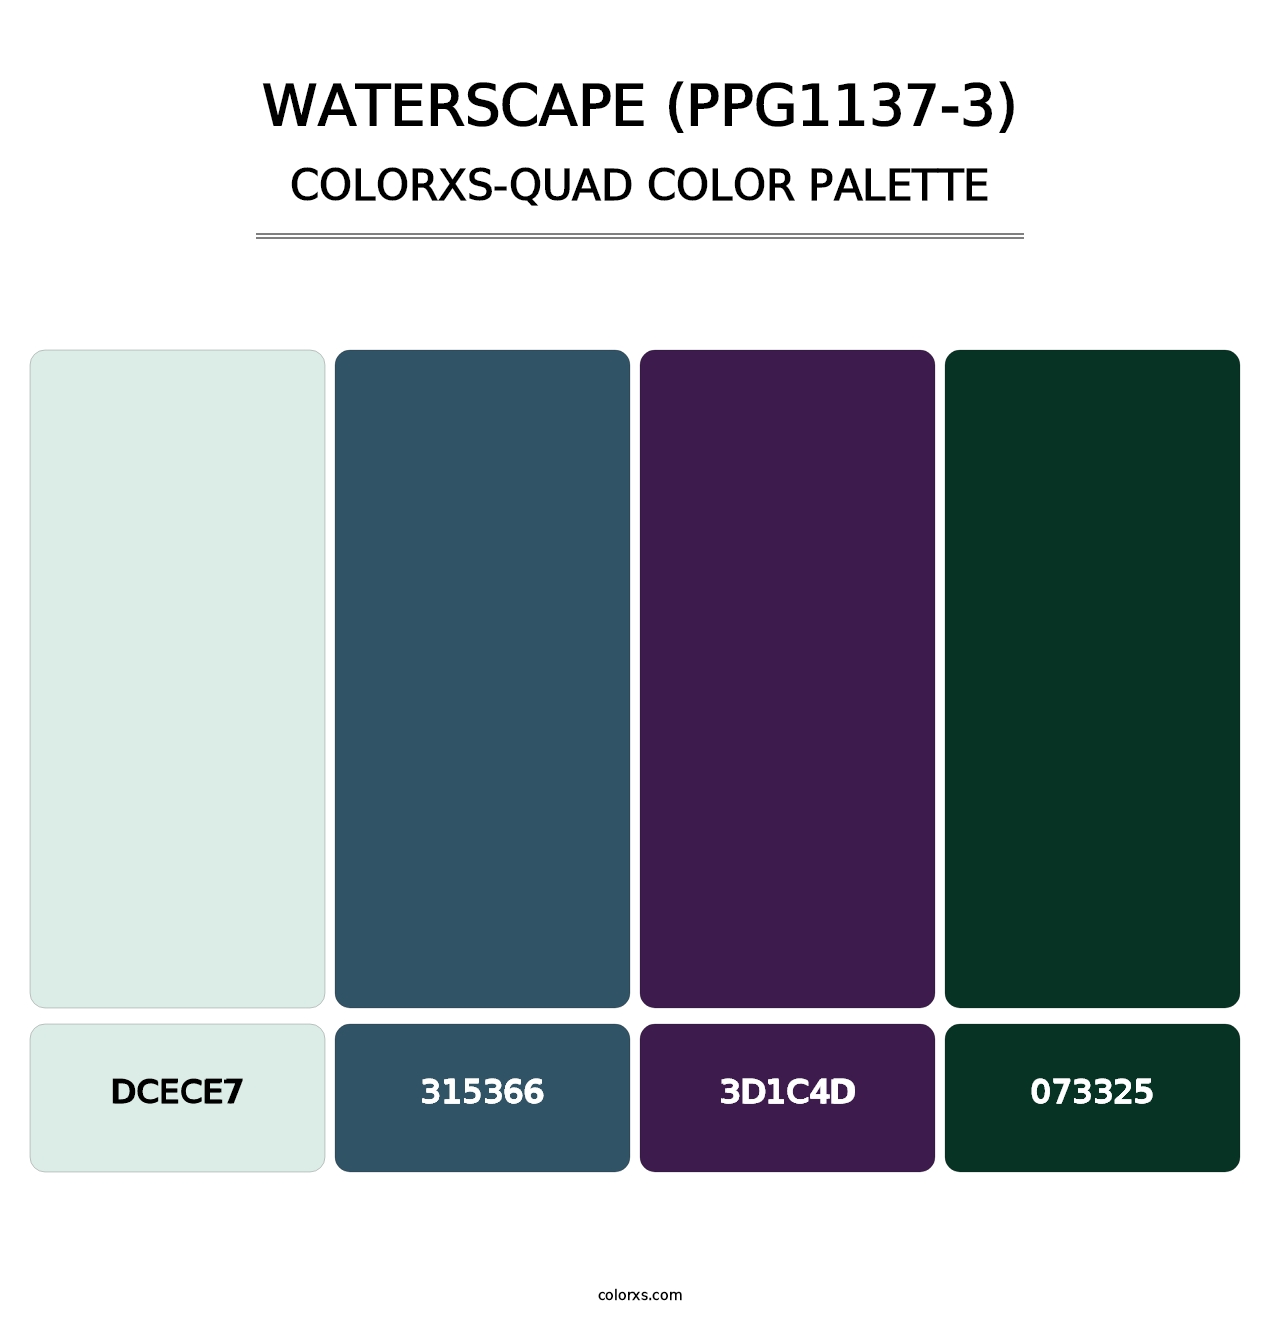 Waterscape (PPG1137-3) - Colorxs Quad Palette